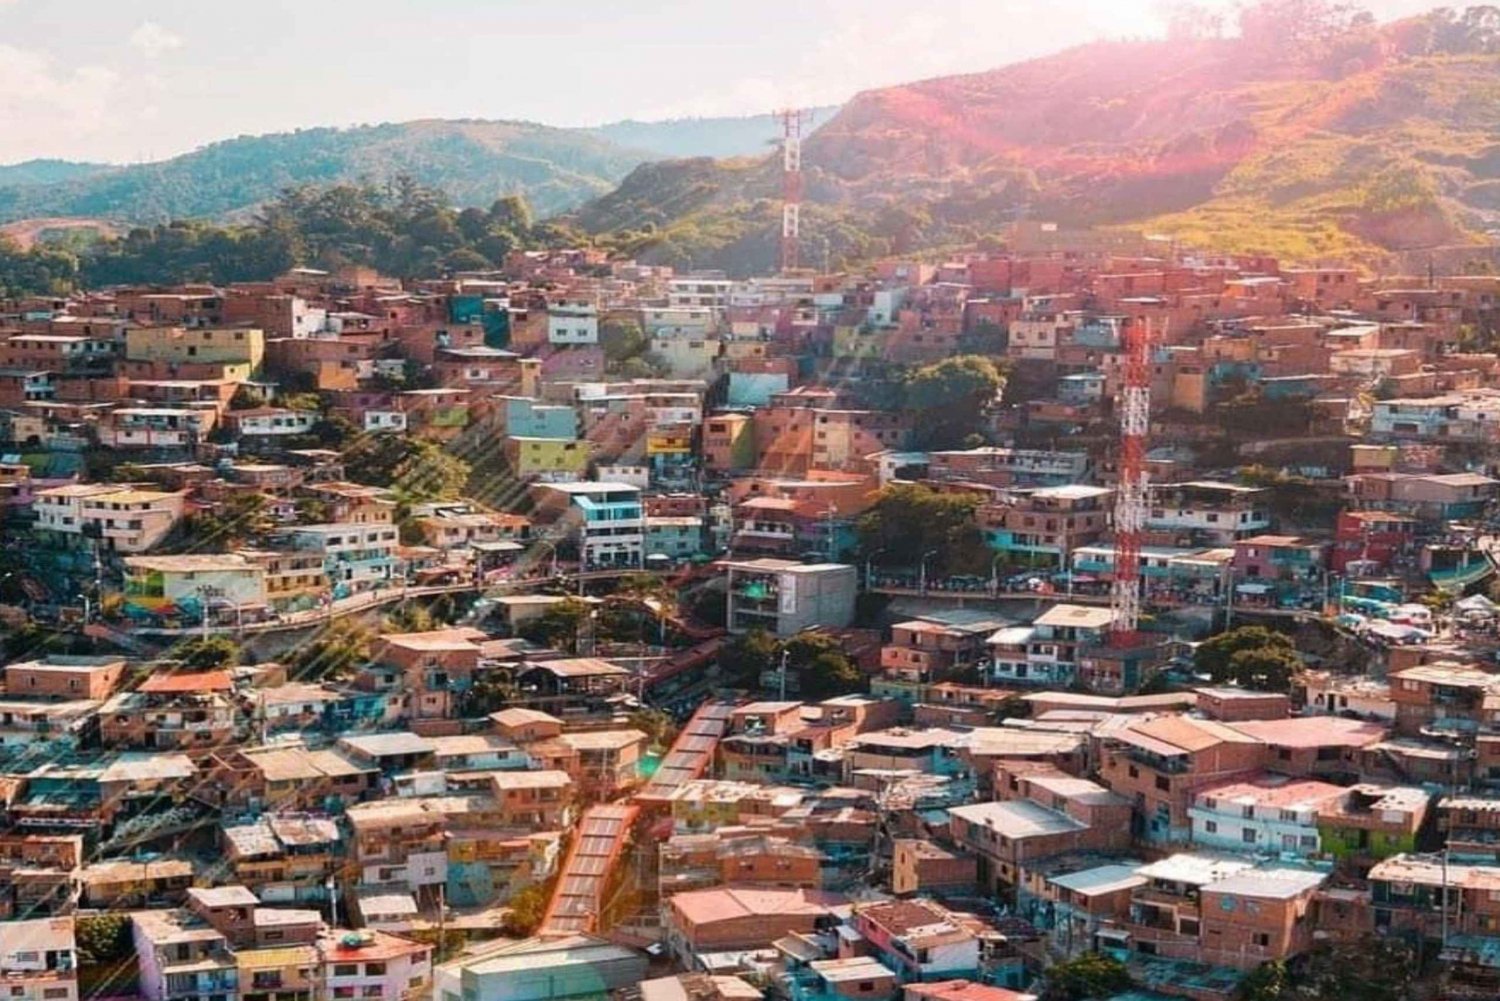 Medellin: Comuna 13 Graffiti Tour Guided by locals